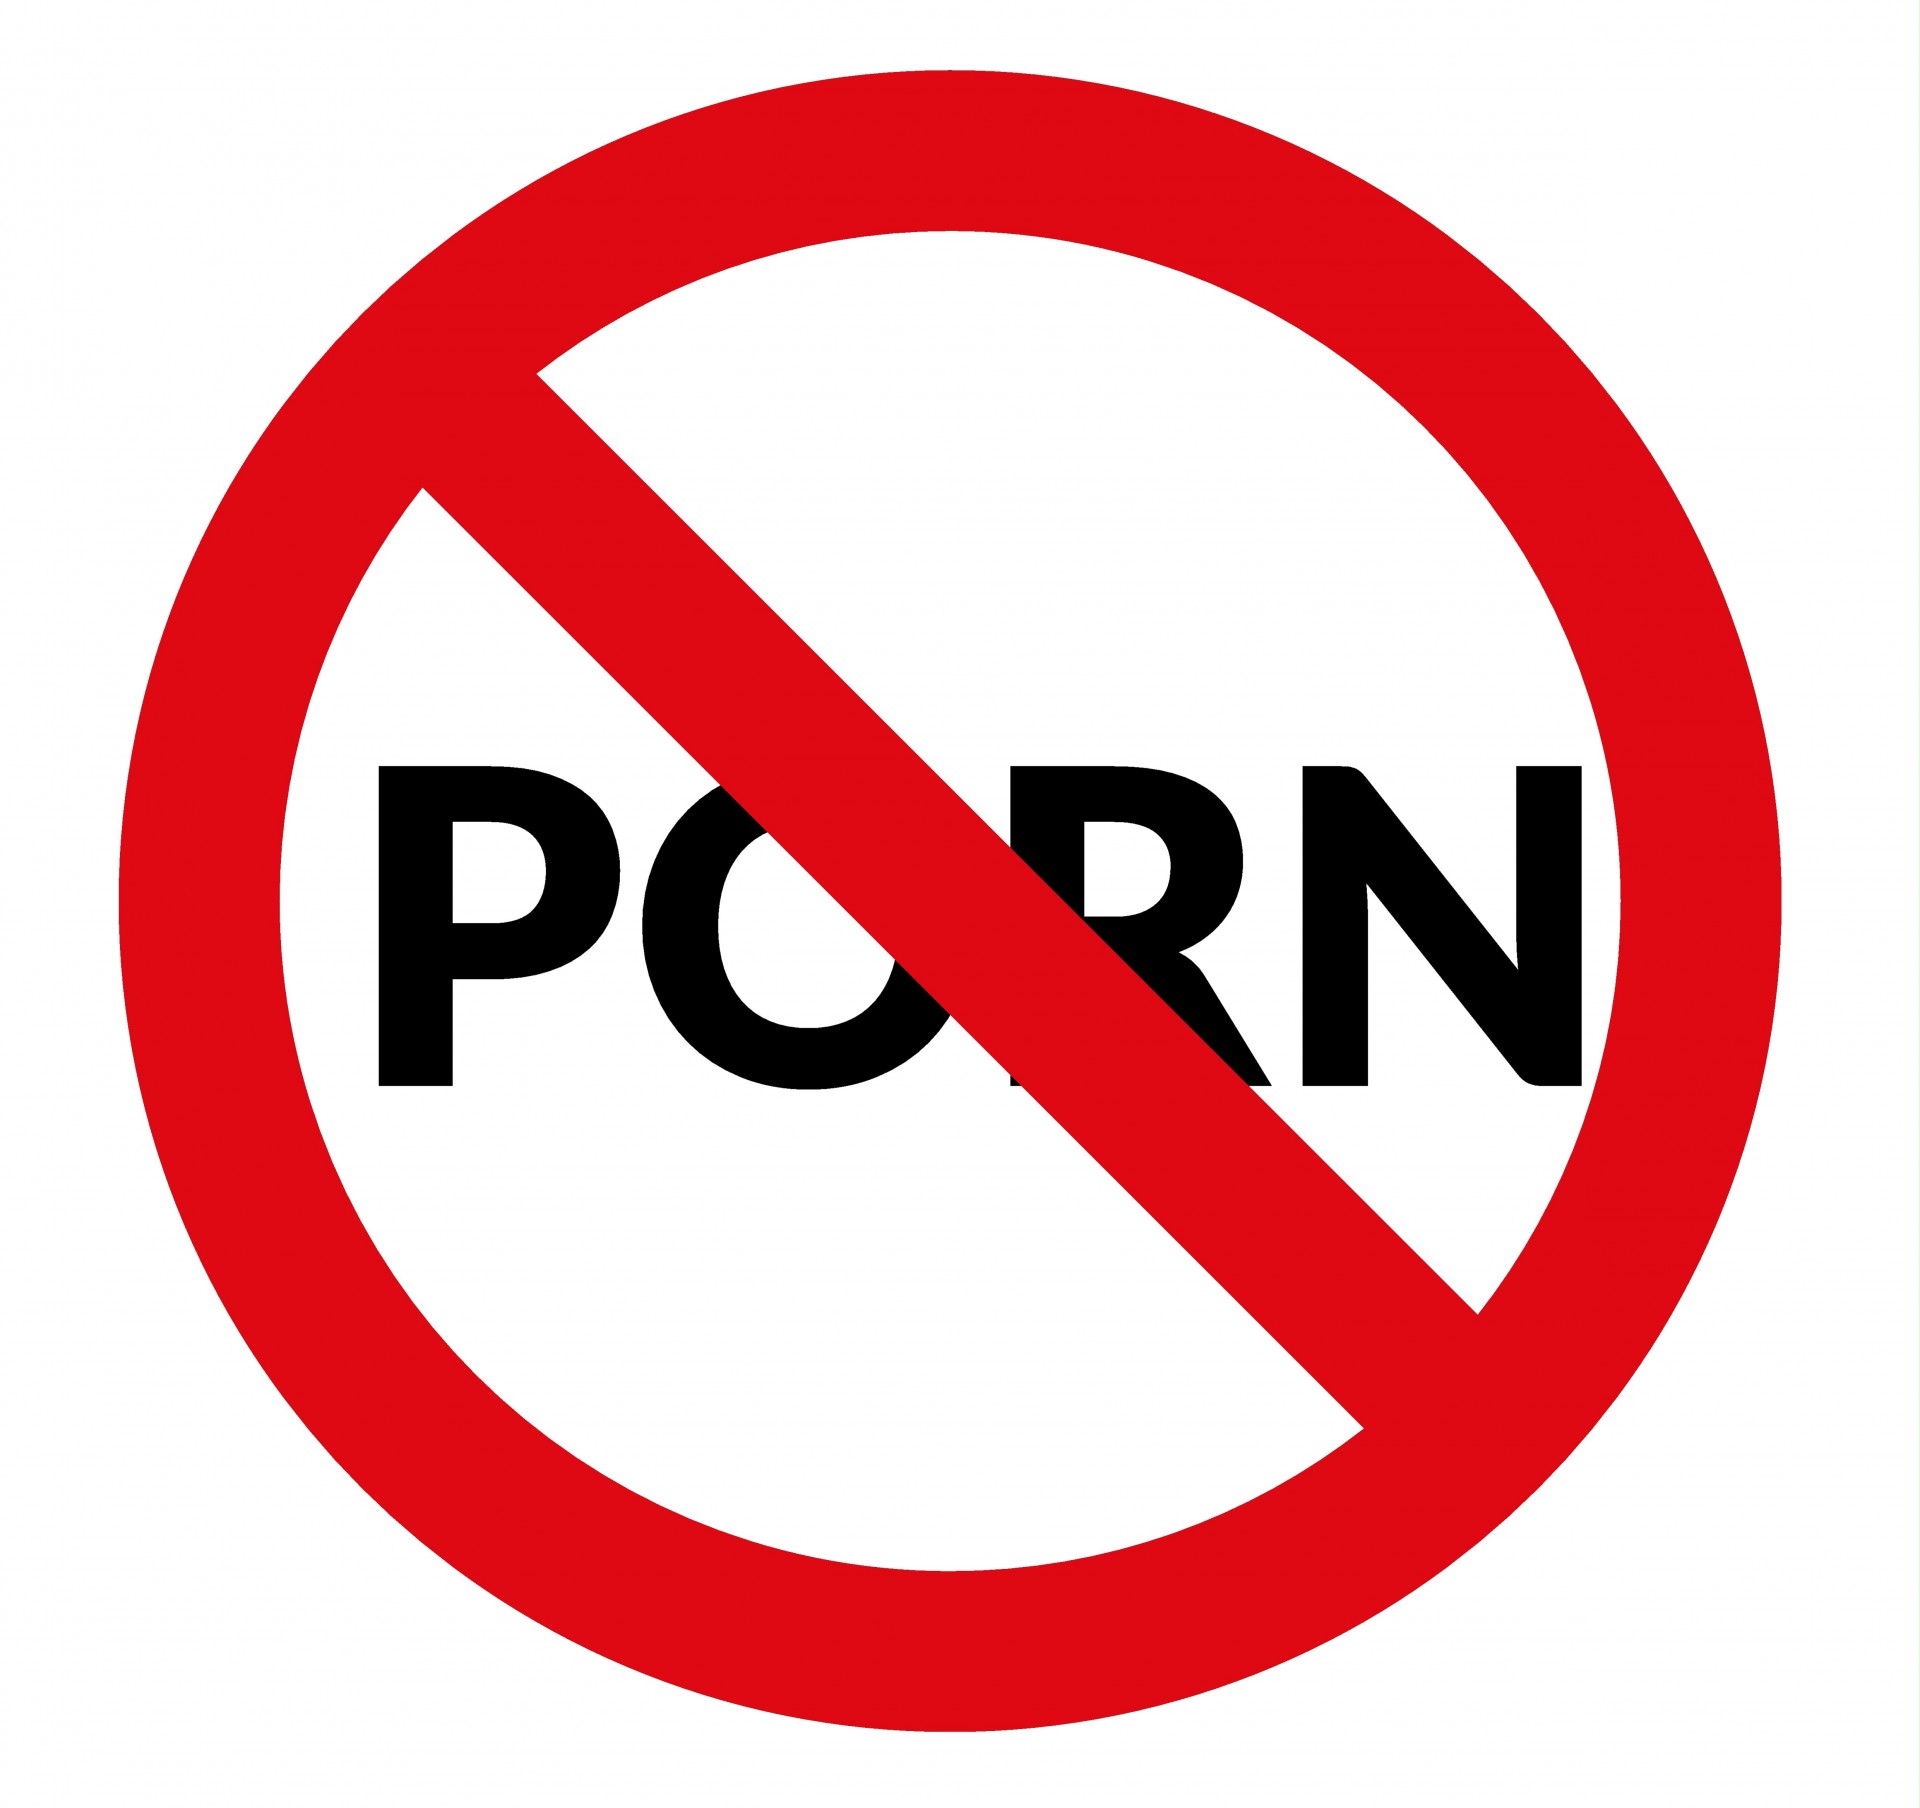 Nu Porn - avertizare semn